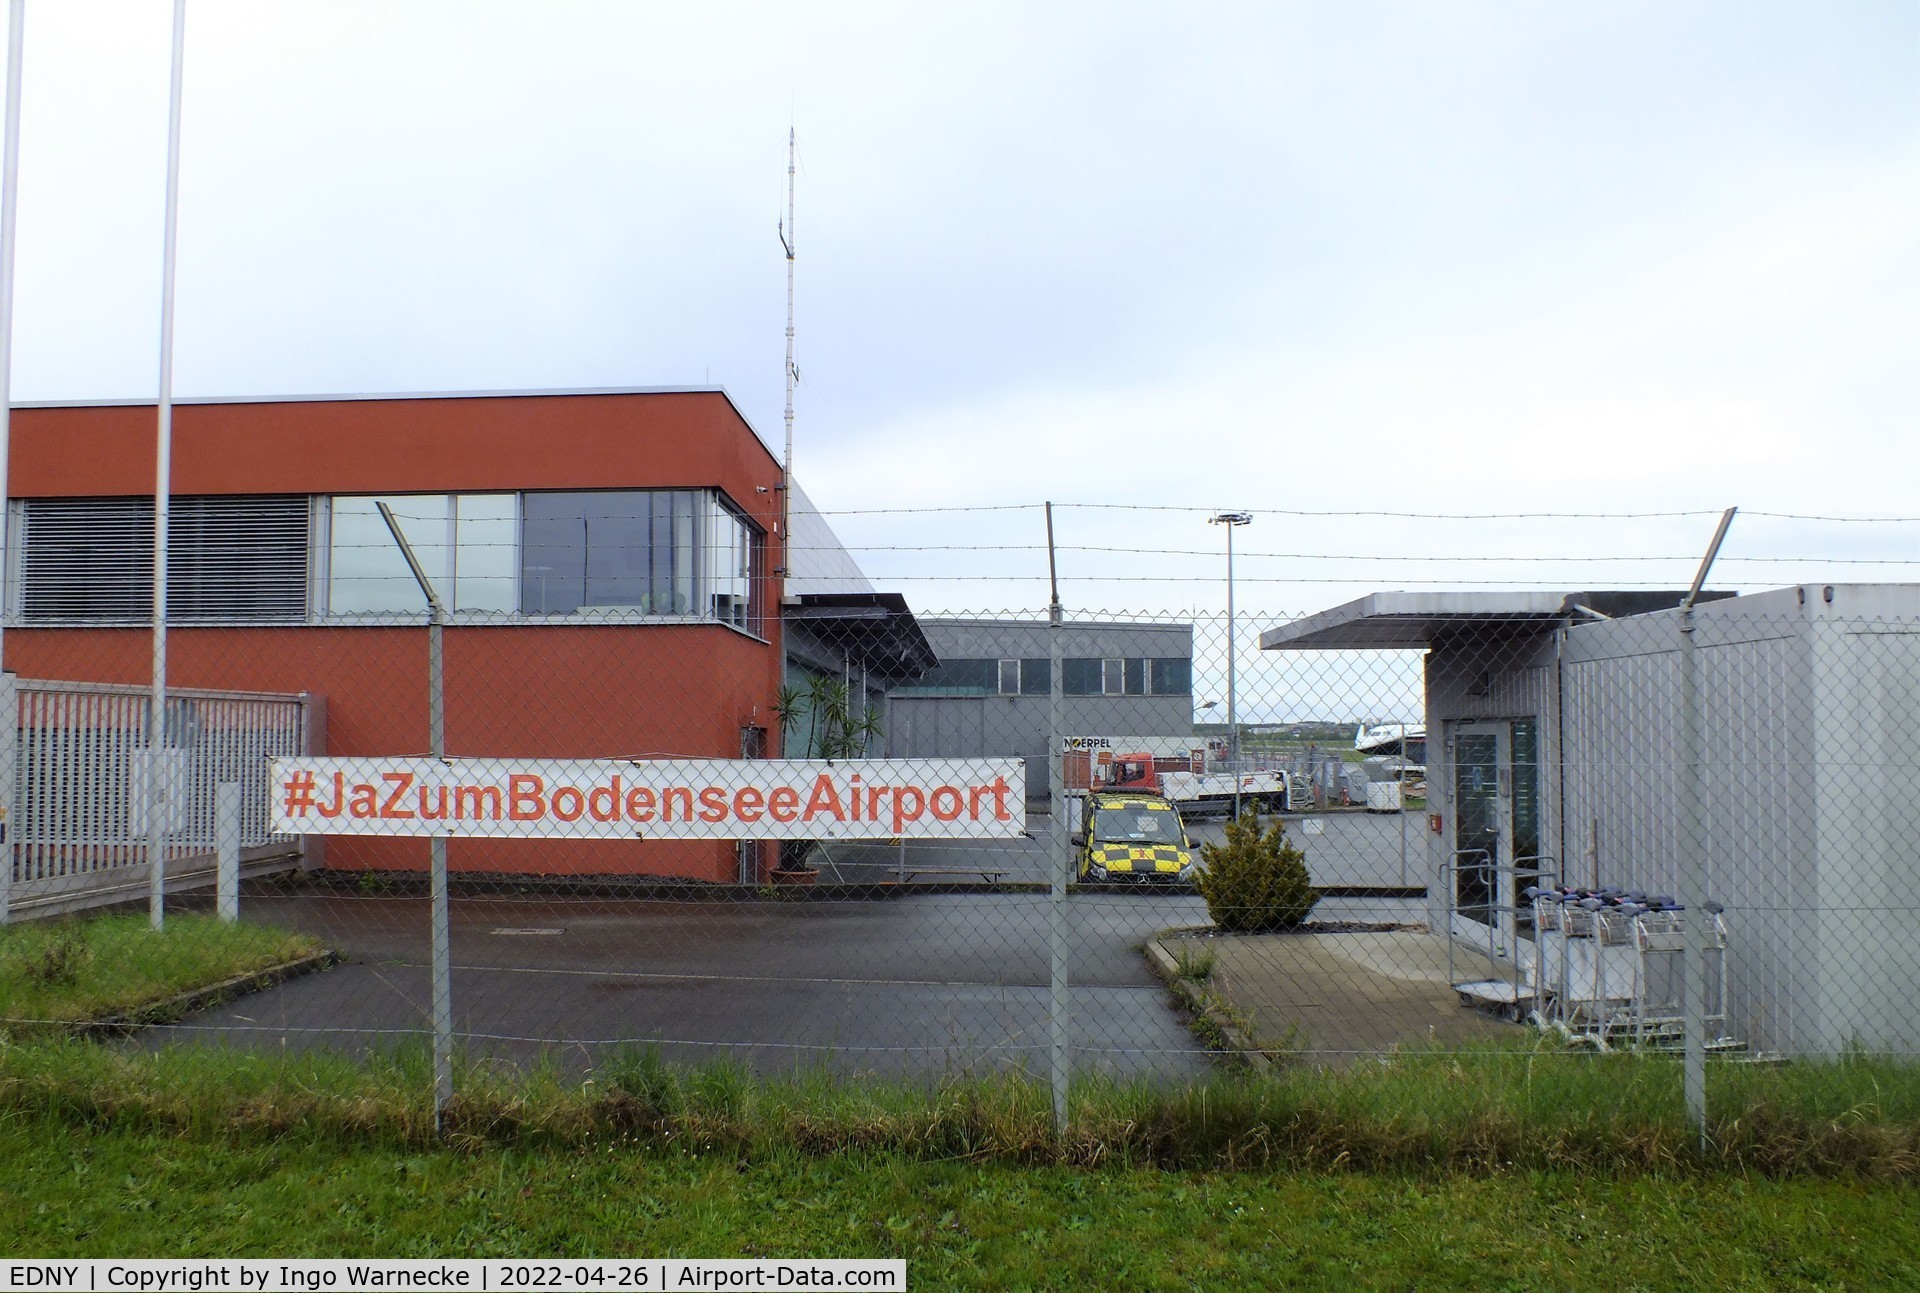 Bodensee Airport, Friedrichshafen Germany (EDNY) - western hangar and building at Friedrichshafen Bodensee airport